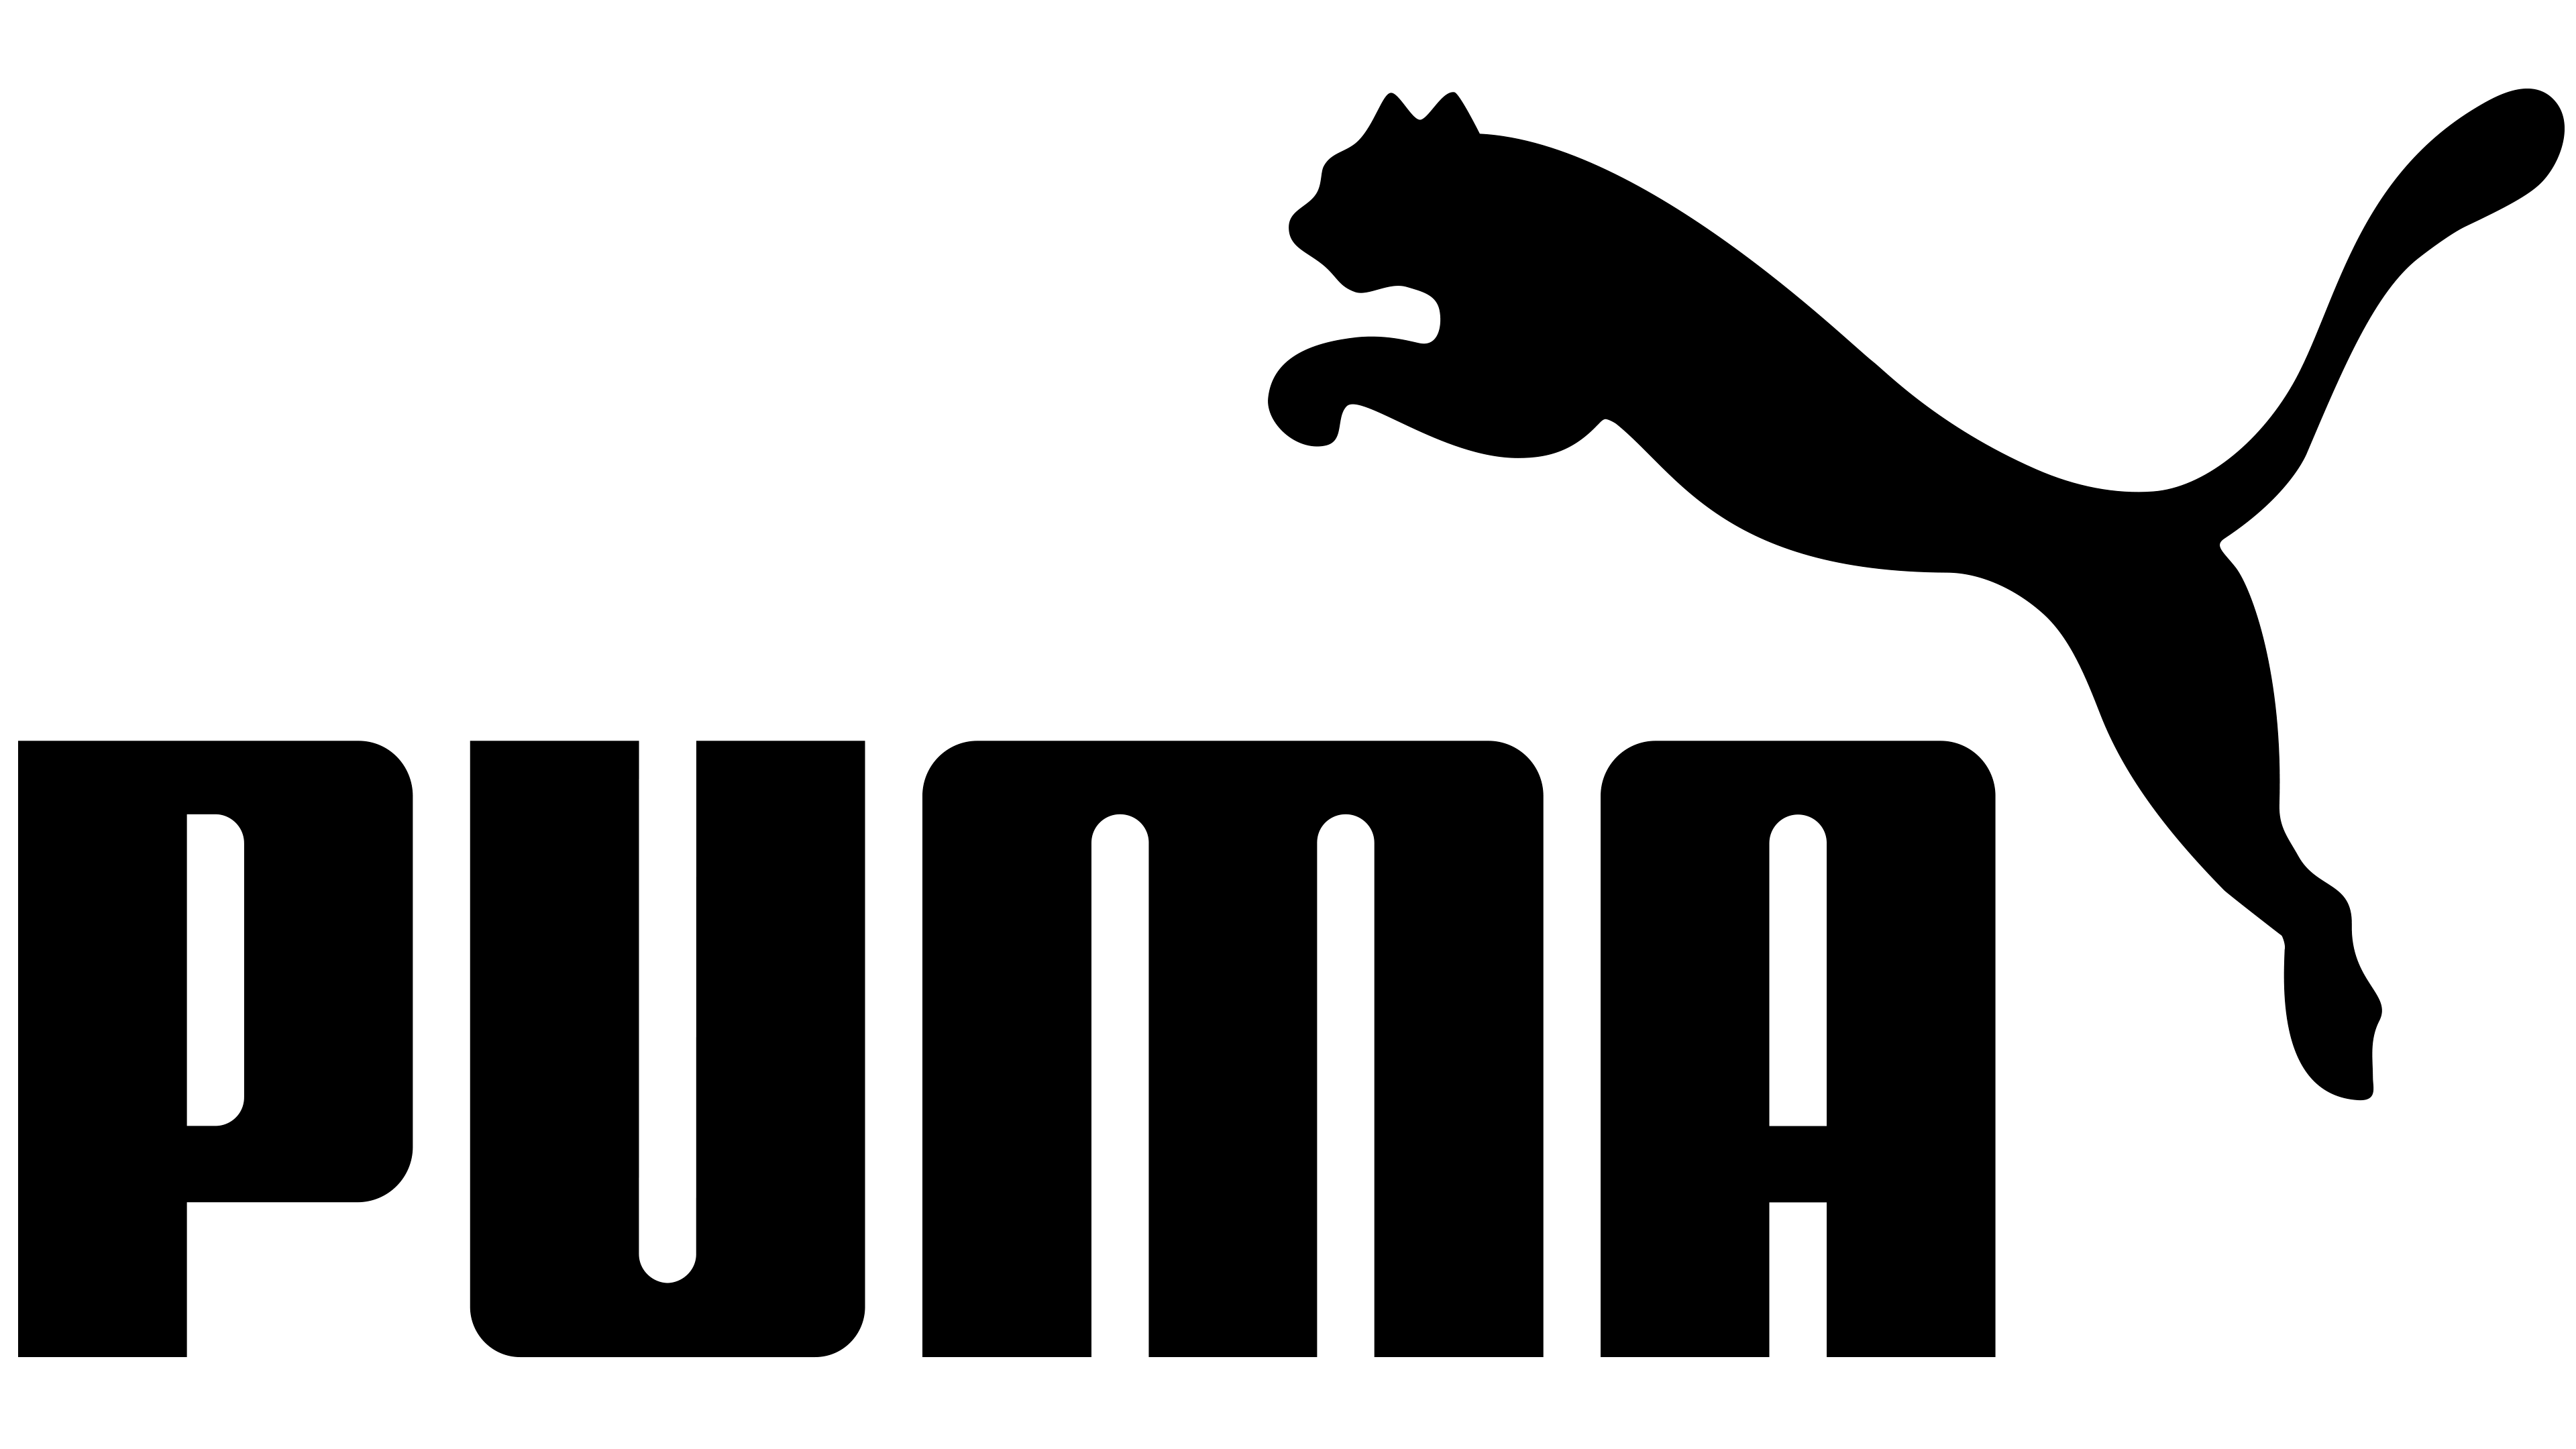 marque puma logo